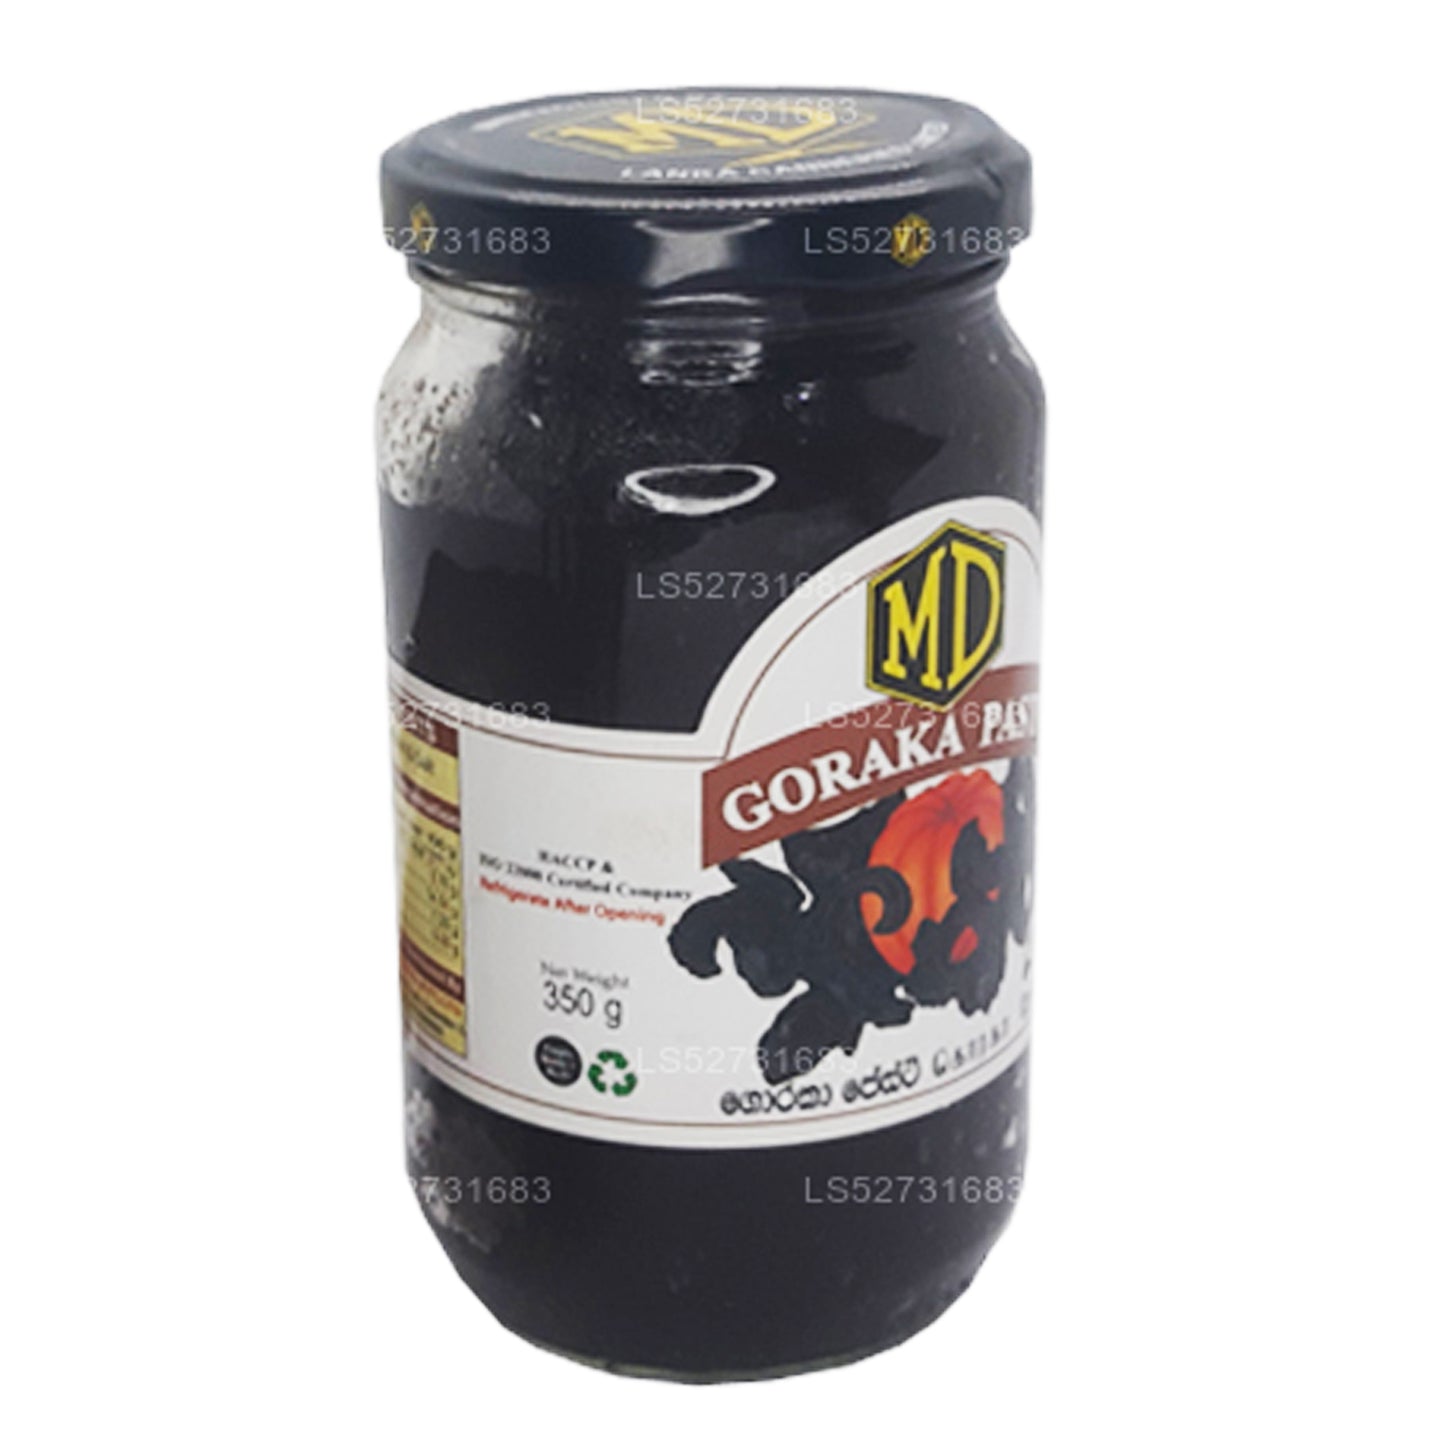 MD Goraka-pasta (350 g)